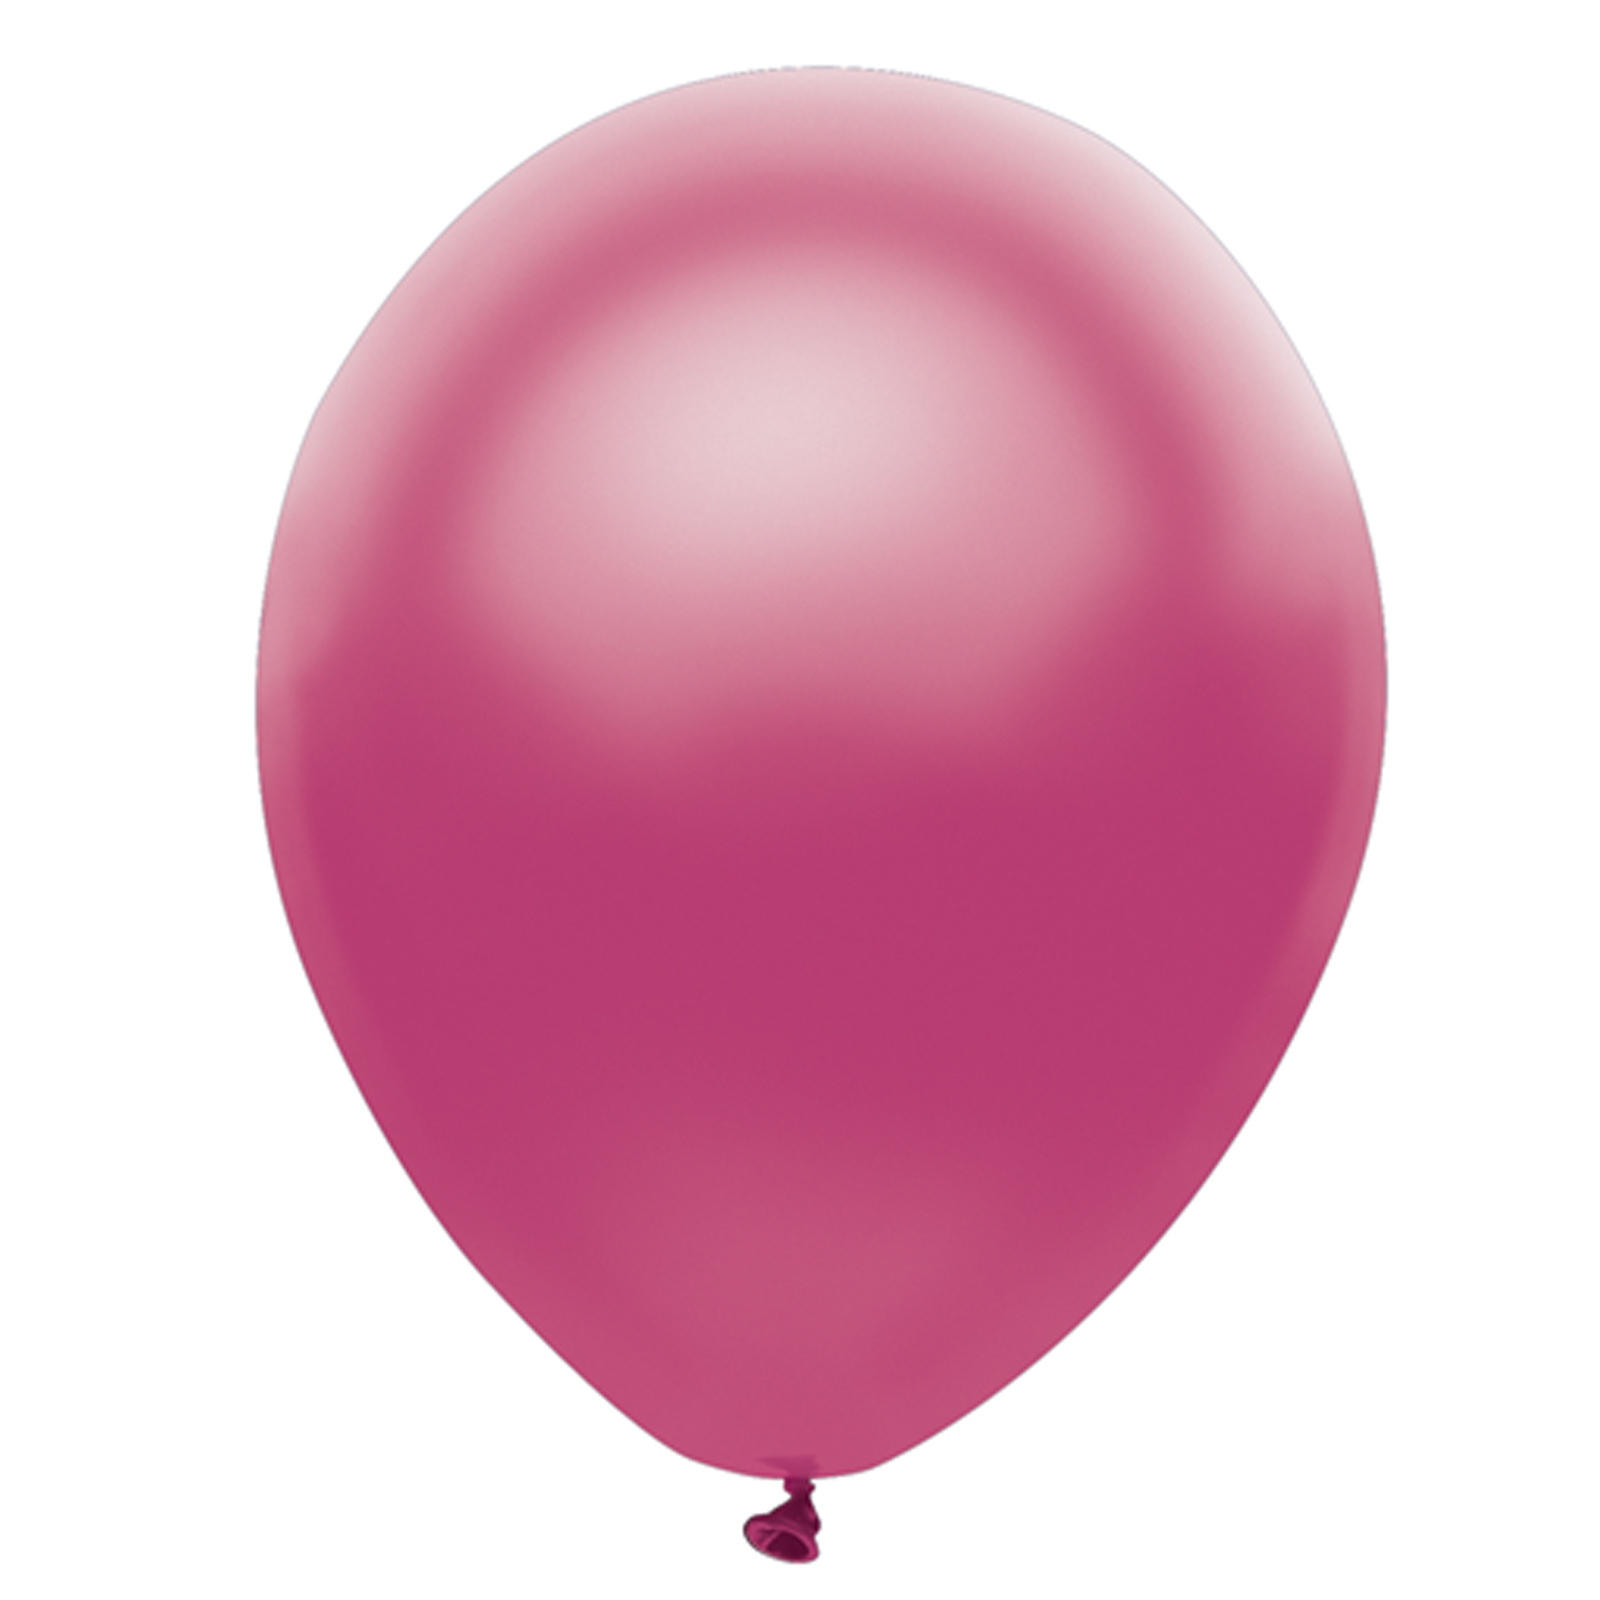 Про розовый шарик. Розовый воздушный шар. Розовые шарики. Розовые шарики воздушные. Розовые круглые шарики воздушные.